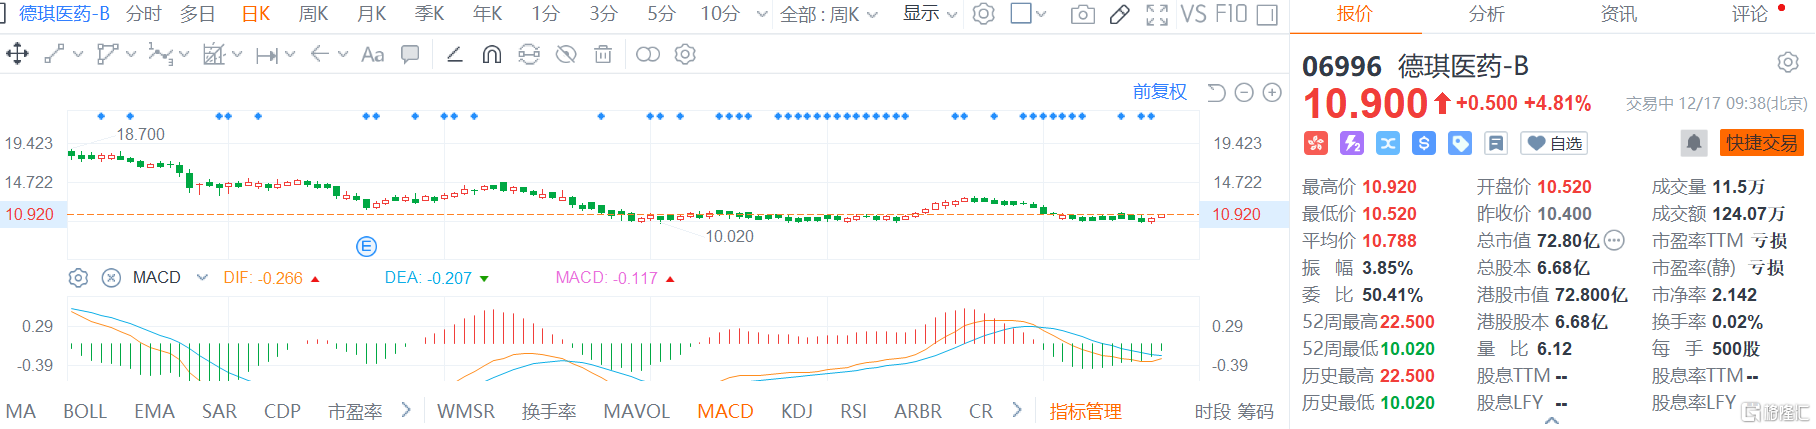 德琪医药-B(6996.HK)现报10.9港元涨幅4.8%，总市值72.8亿港元